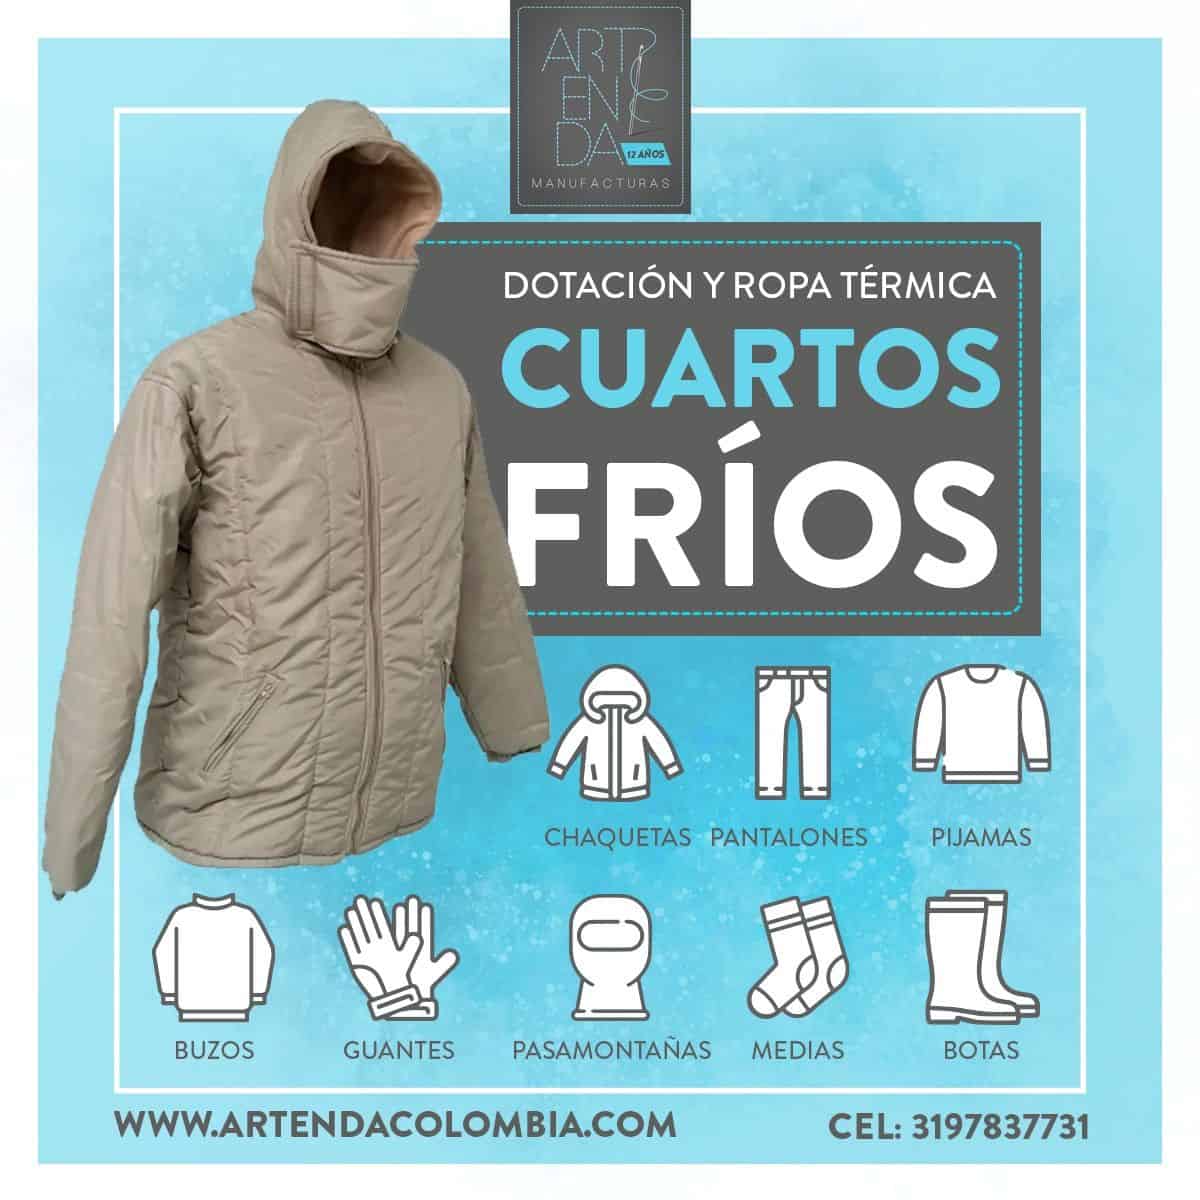 Dotación y ropa térmica para cuartos fríos - Artenda Colombia